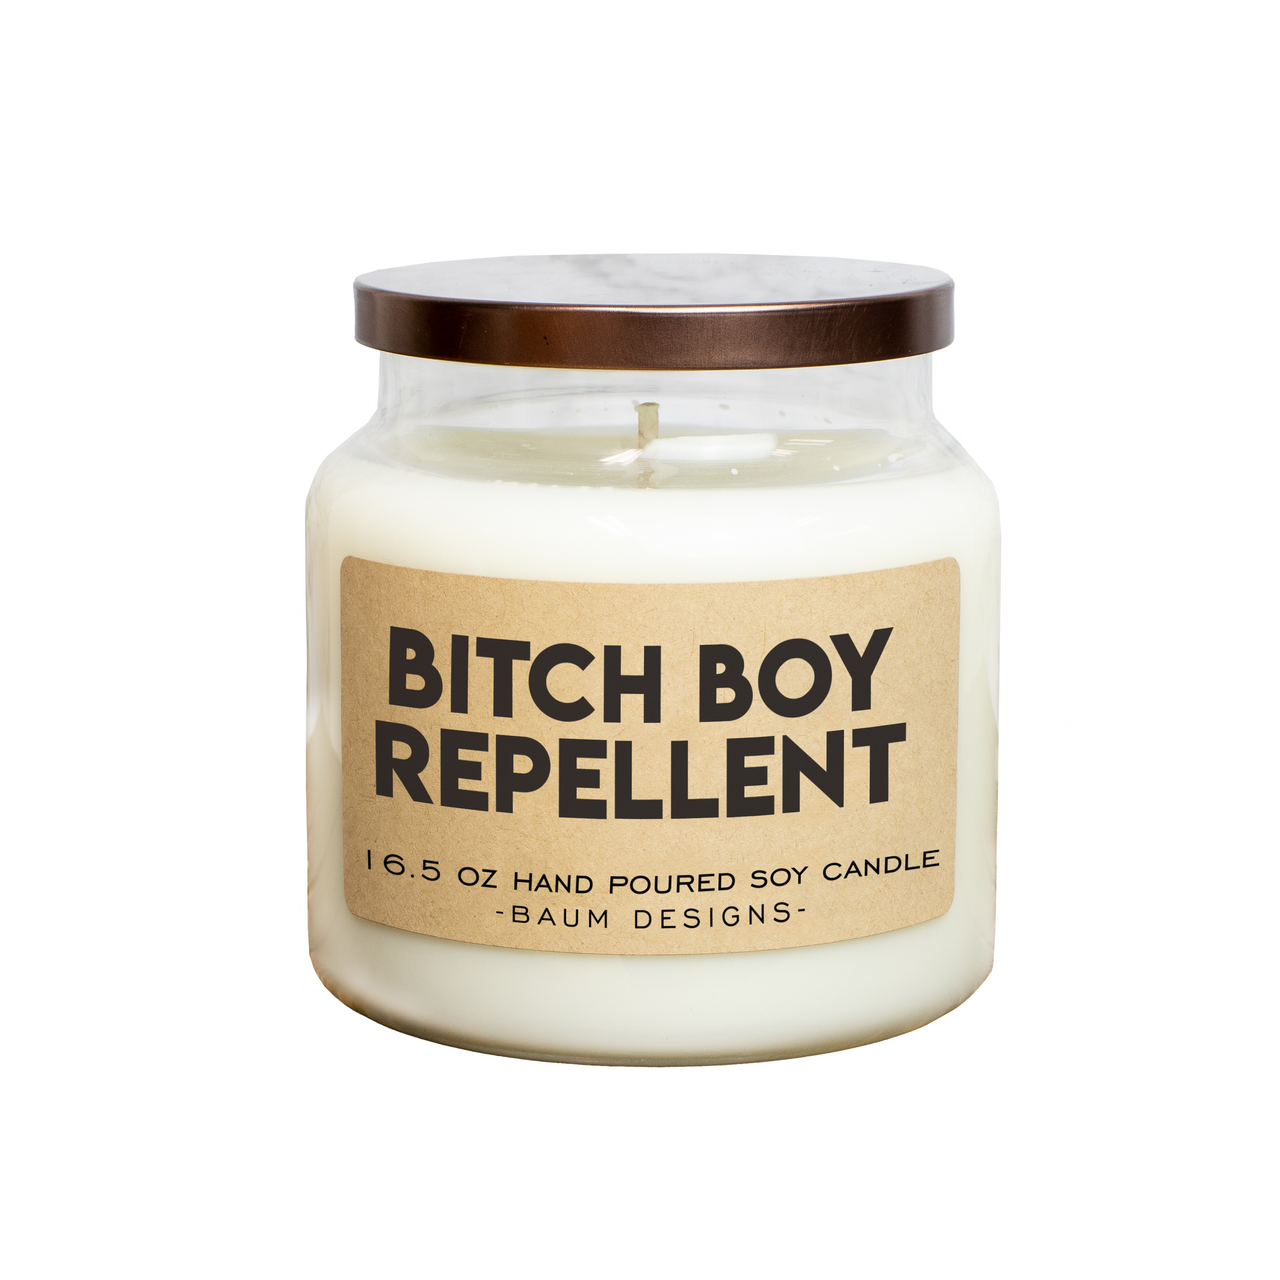 Bitch Boy Repellent Soy Candle Baum Designs